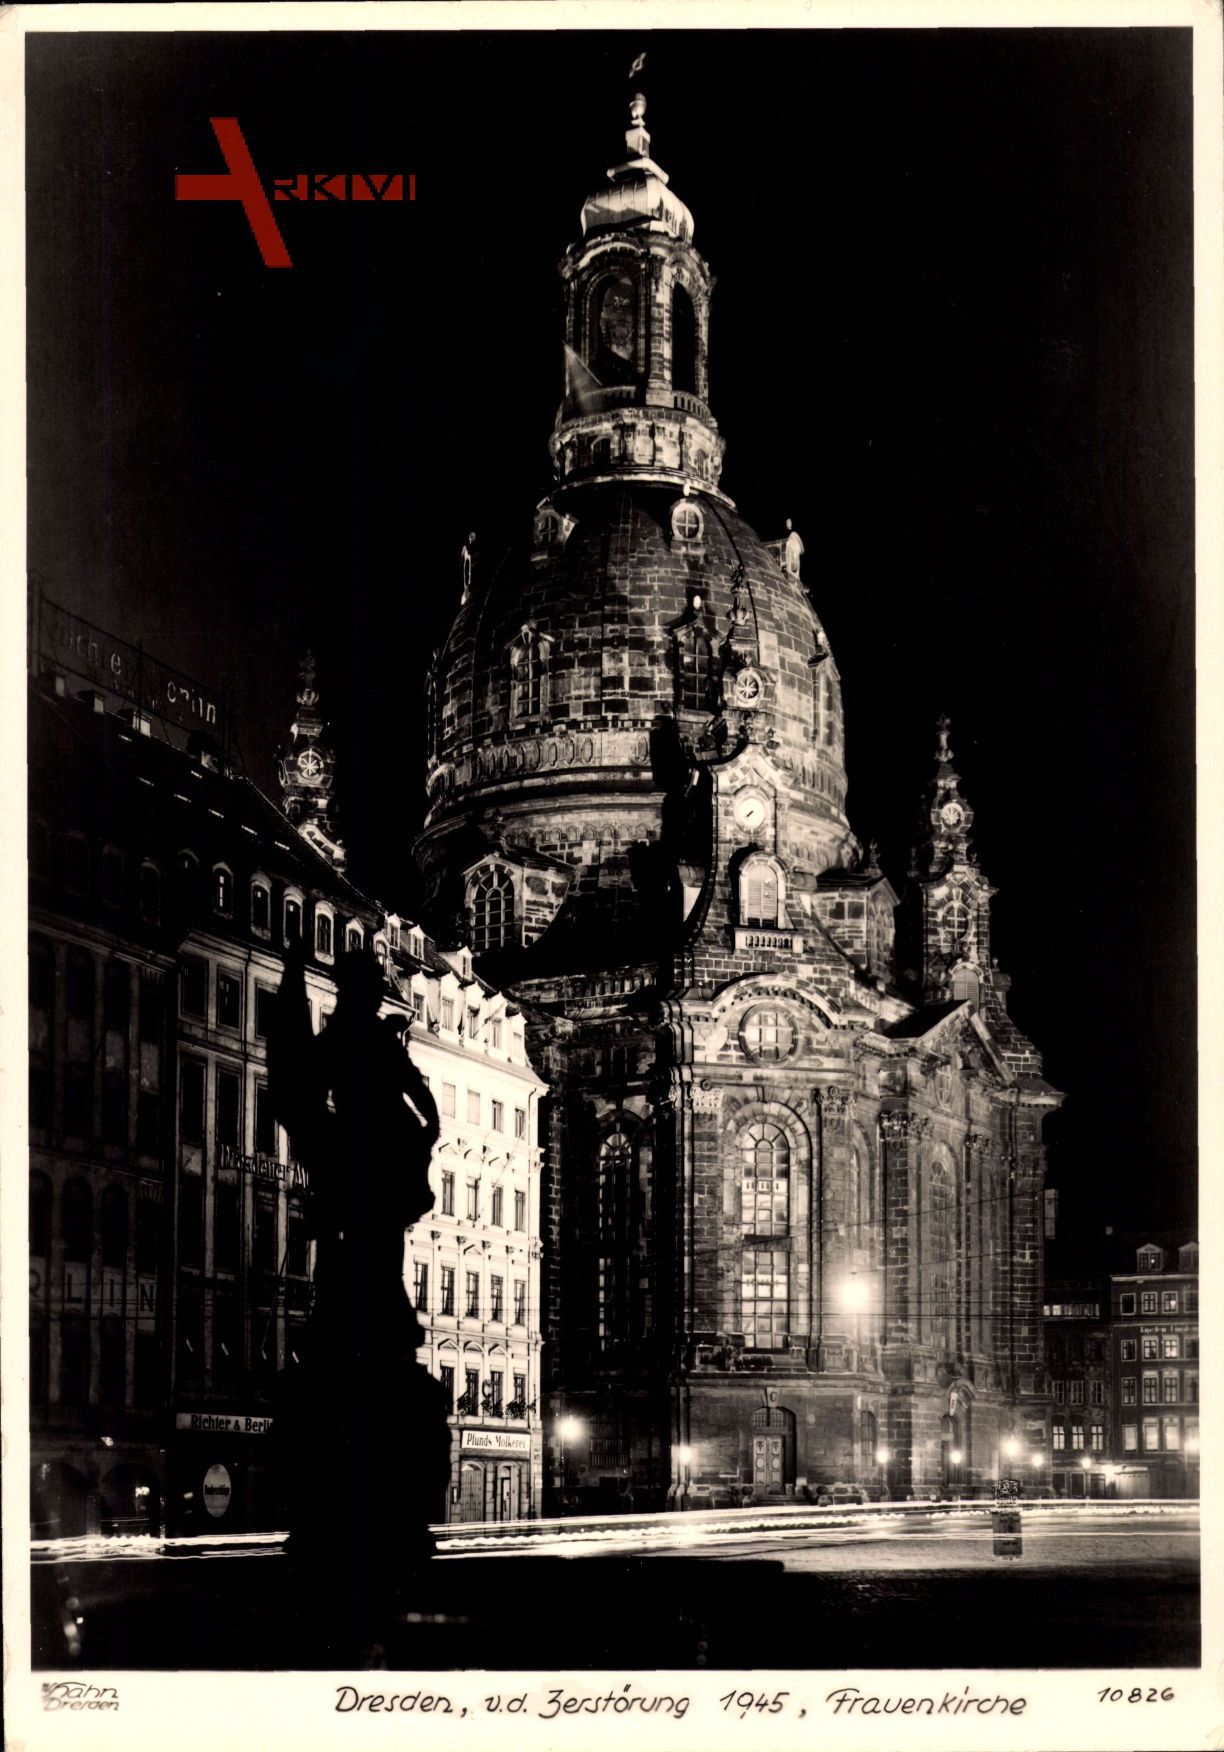 Dresden, vor der Zerstörung 1945, Blick auf die Frauenkirche, Hahn 10826